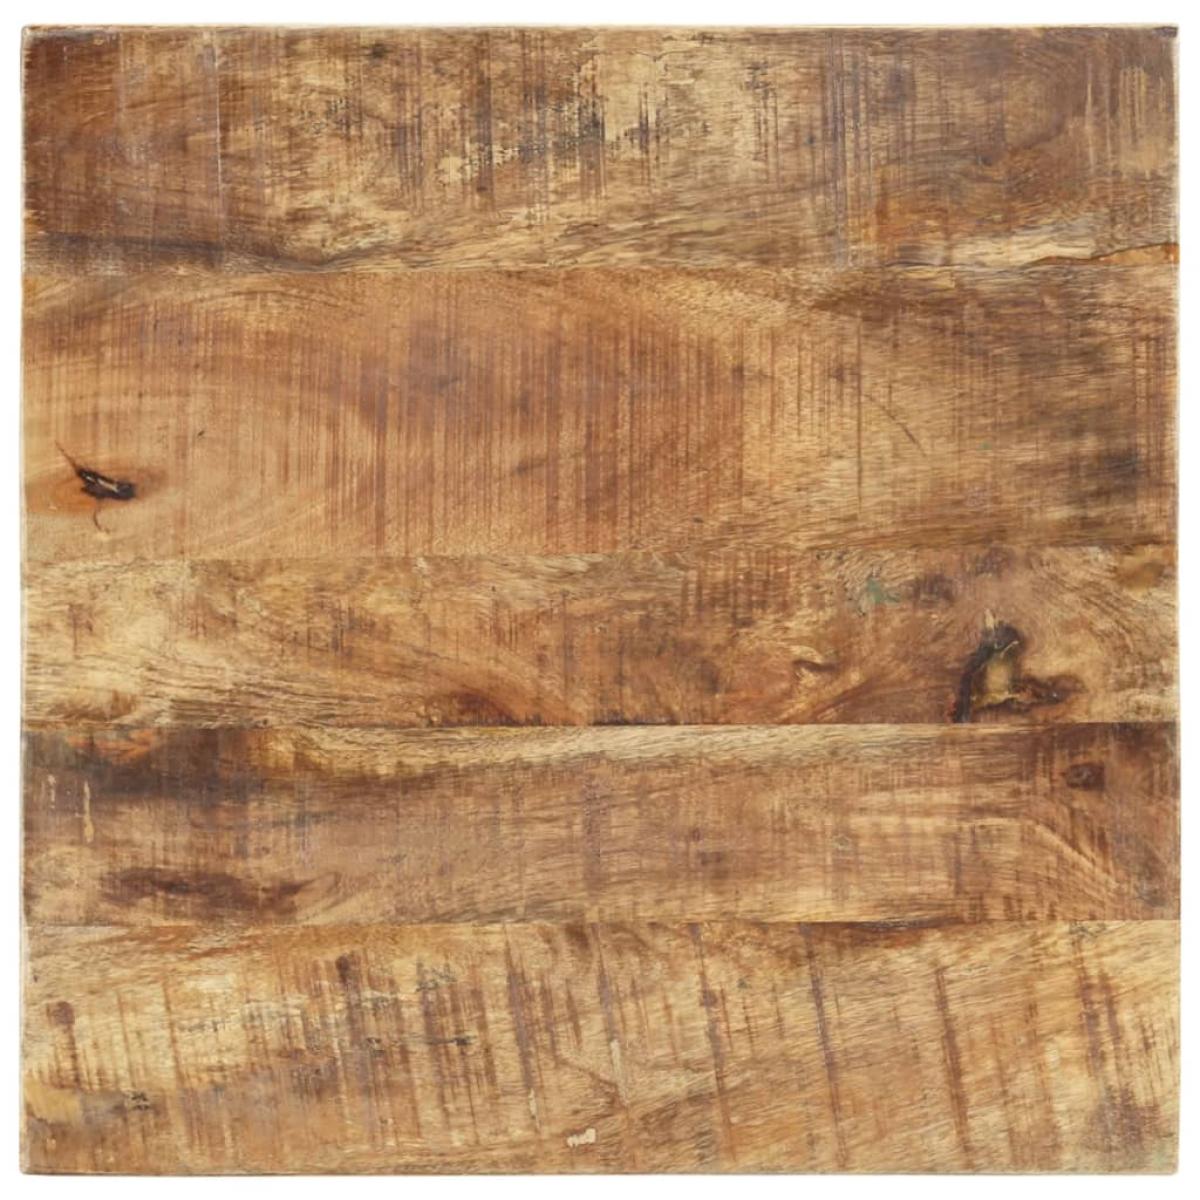 Mesa de centro de madera maciza de mango 45x45x40 cm